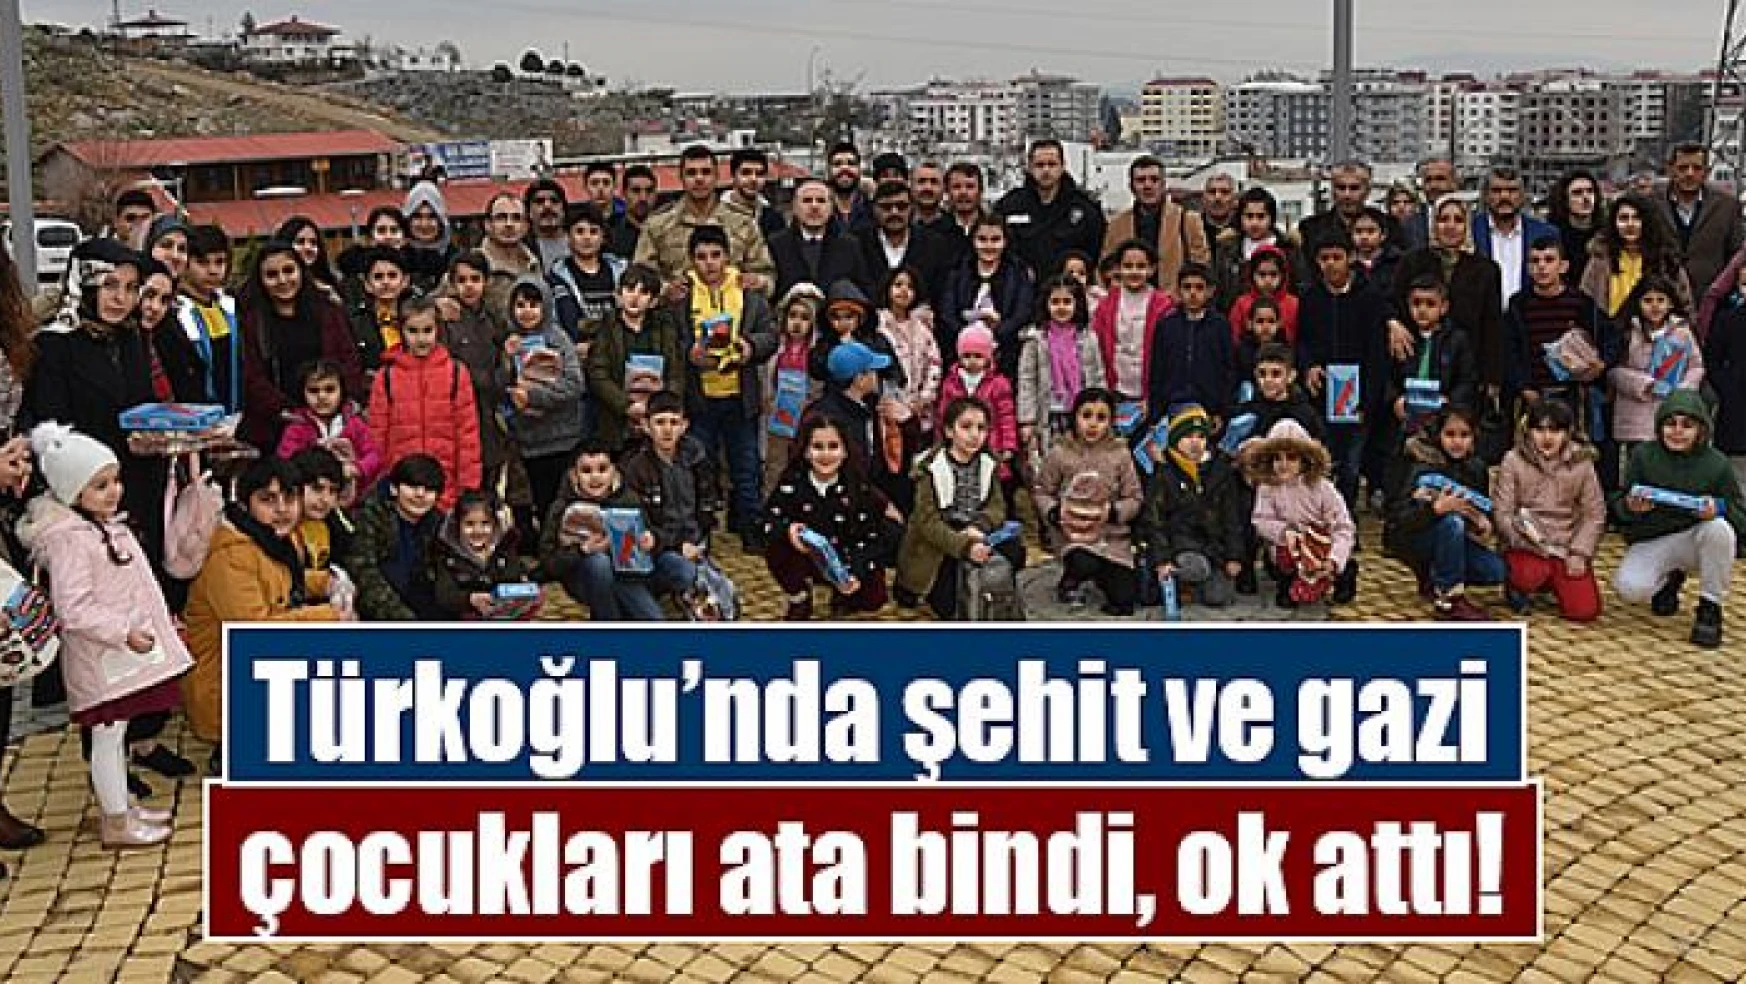 Türkoğlu'nda şehit ve gazi çocukları ata bindi, ok attı!